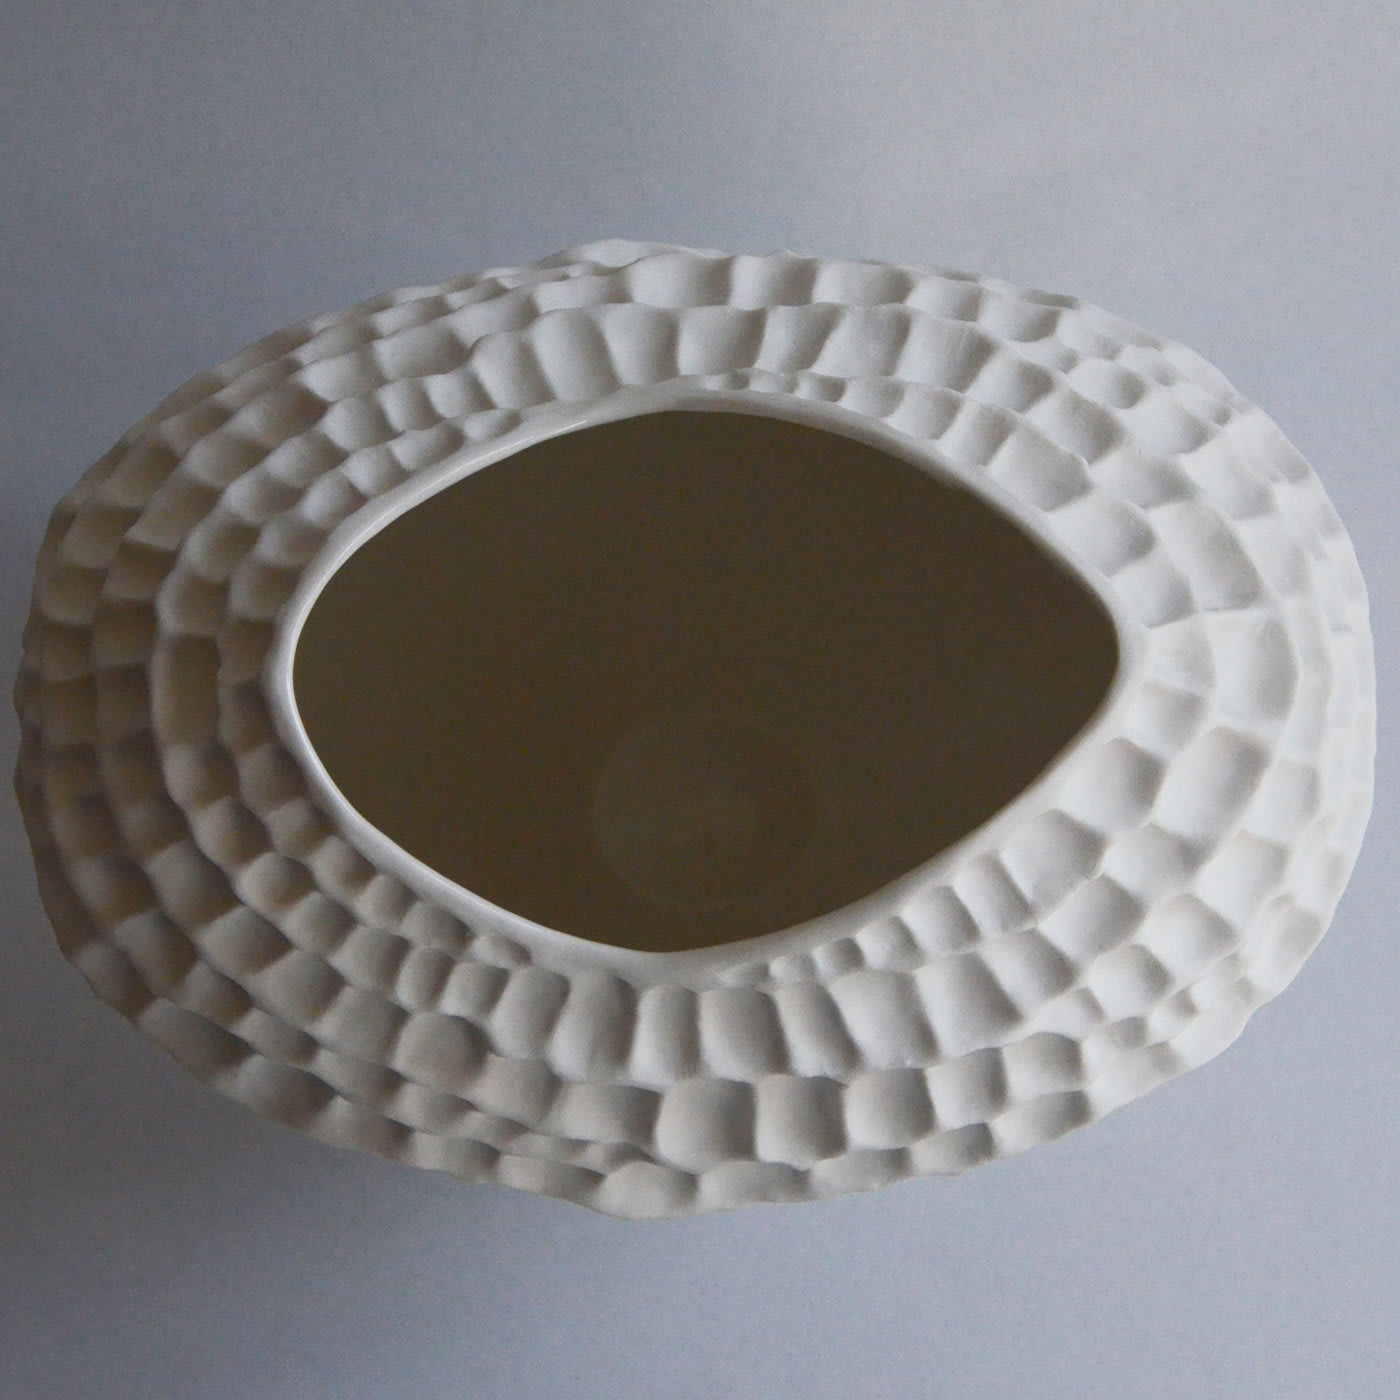 White Sporos Vase - Fos Ceramiche